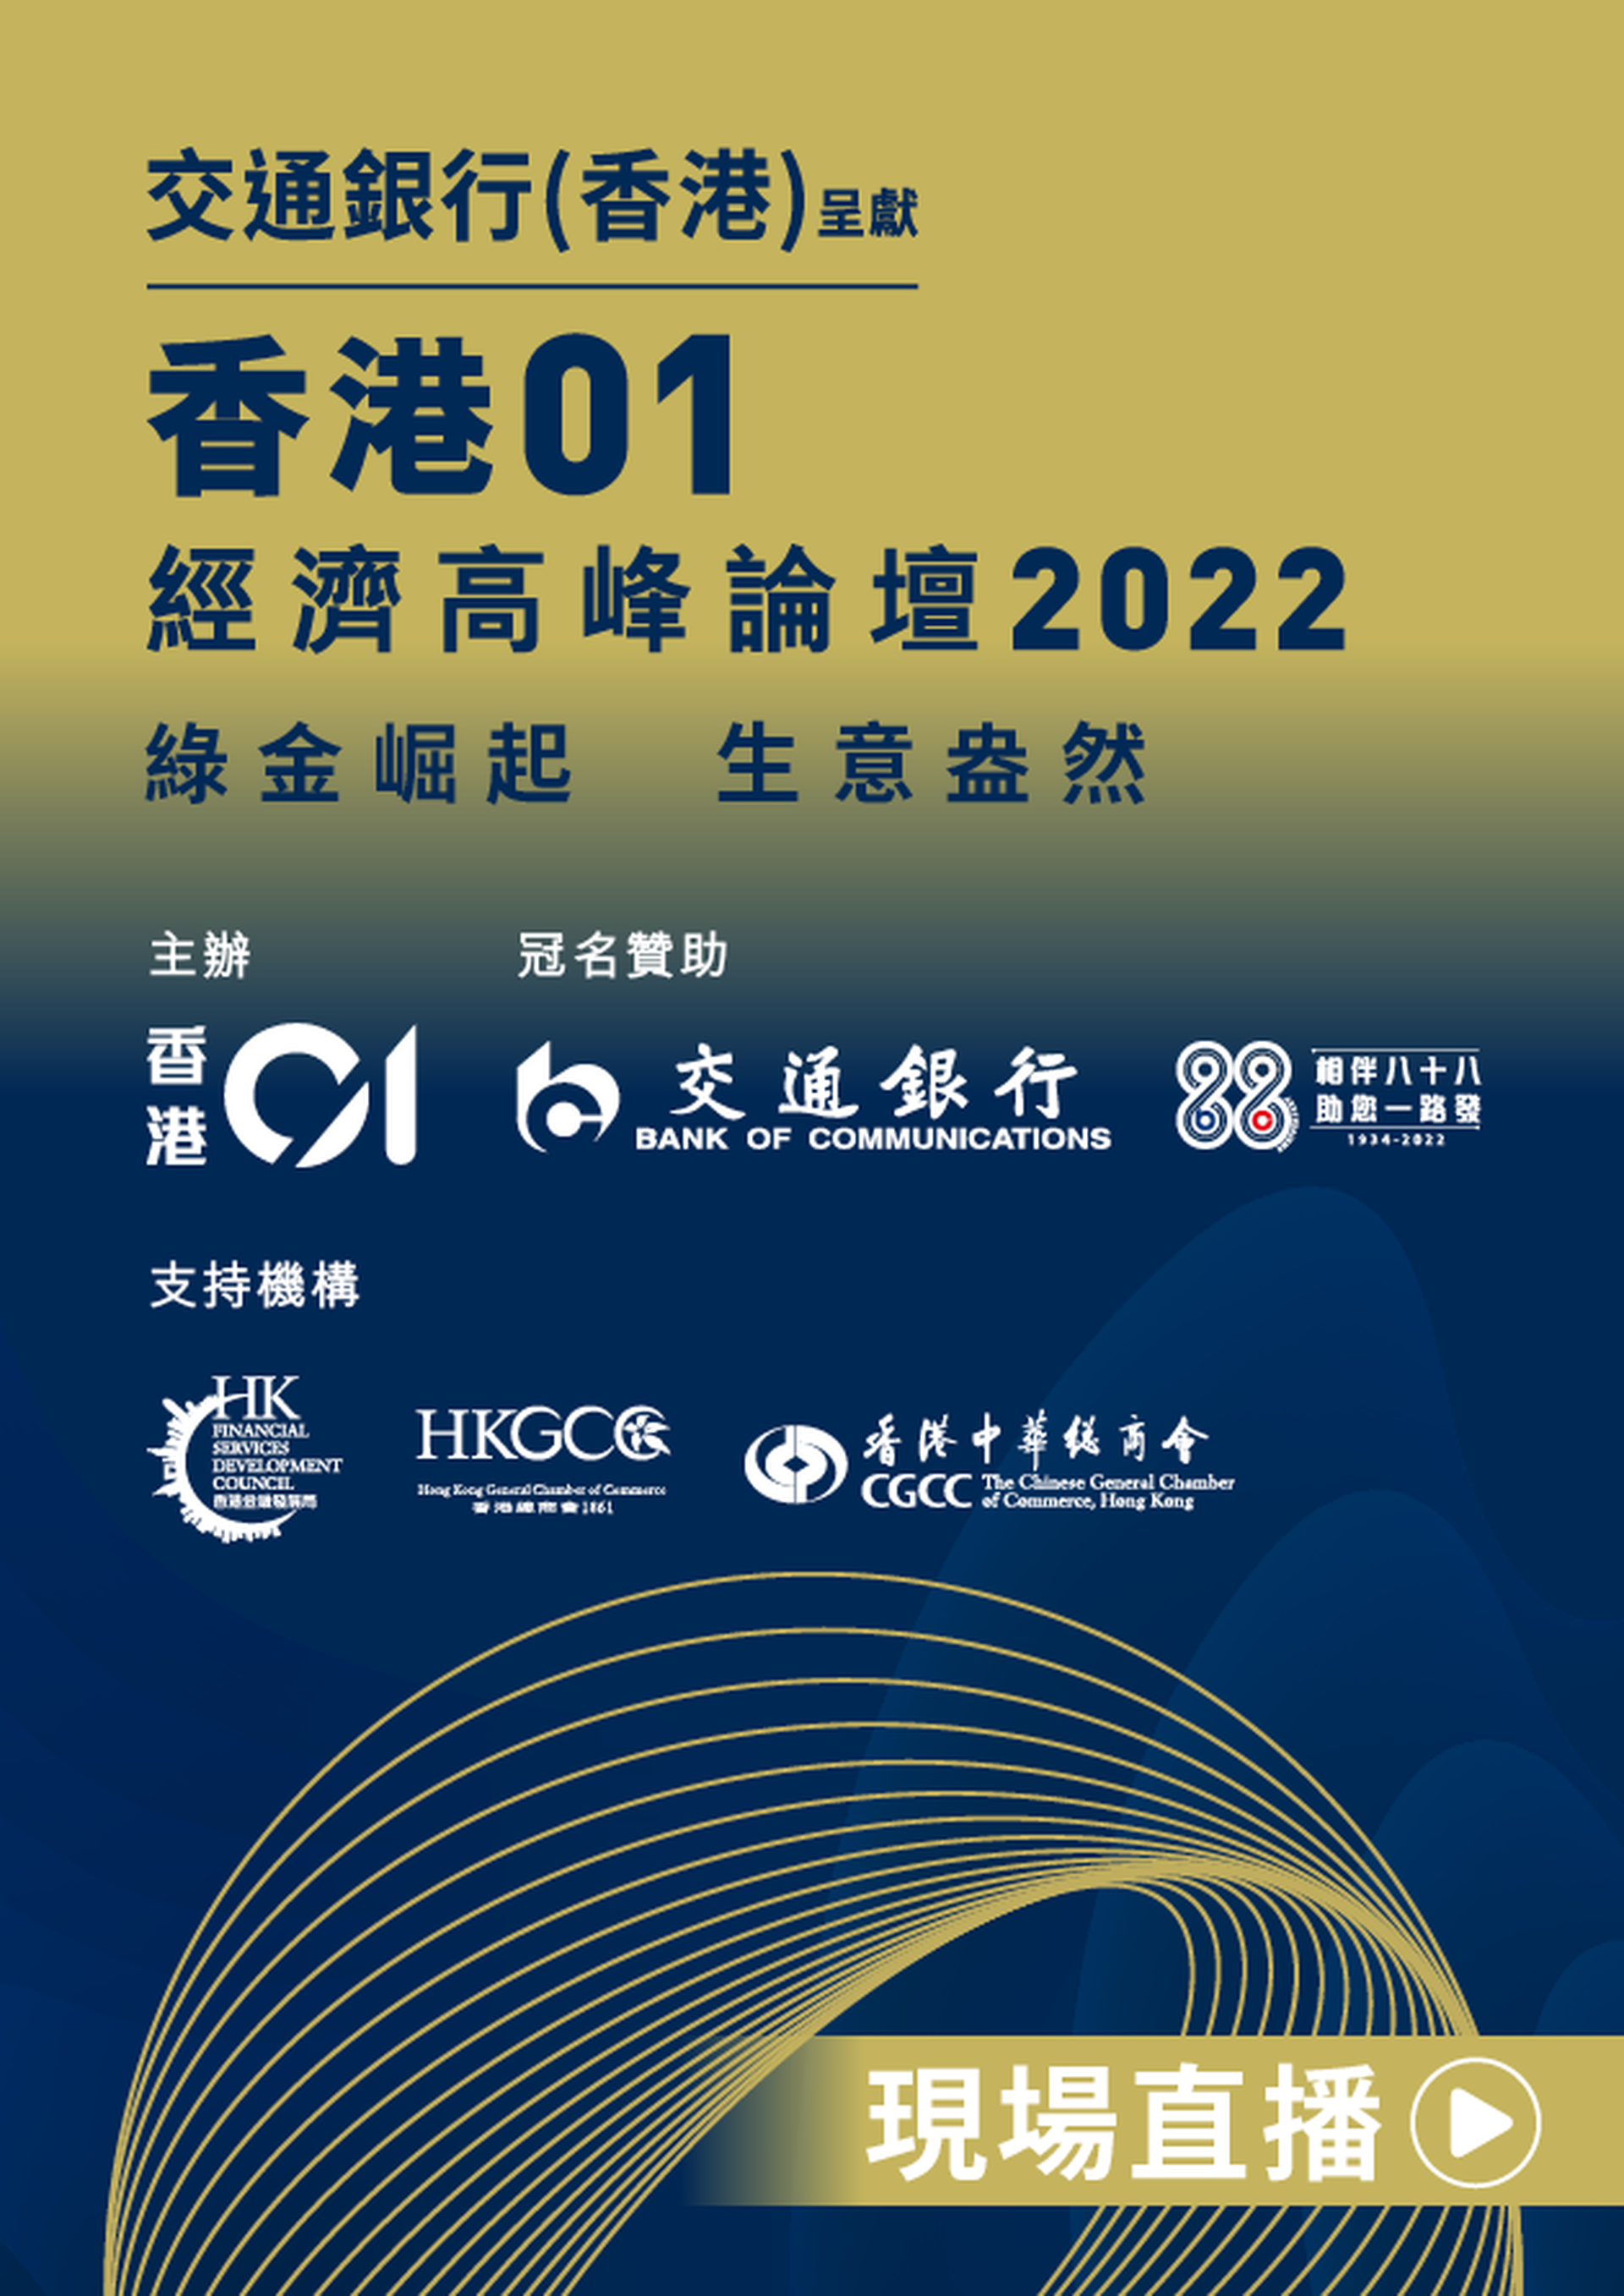 交通銀行(香港)呈獻《香港01》經濟高峰論壇2022